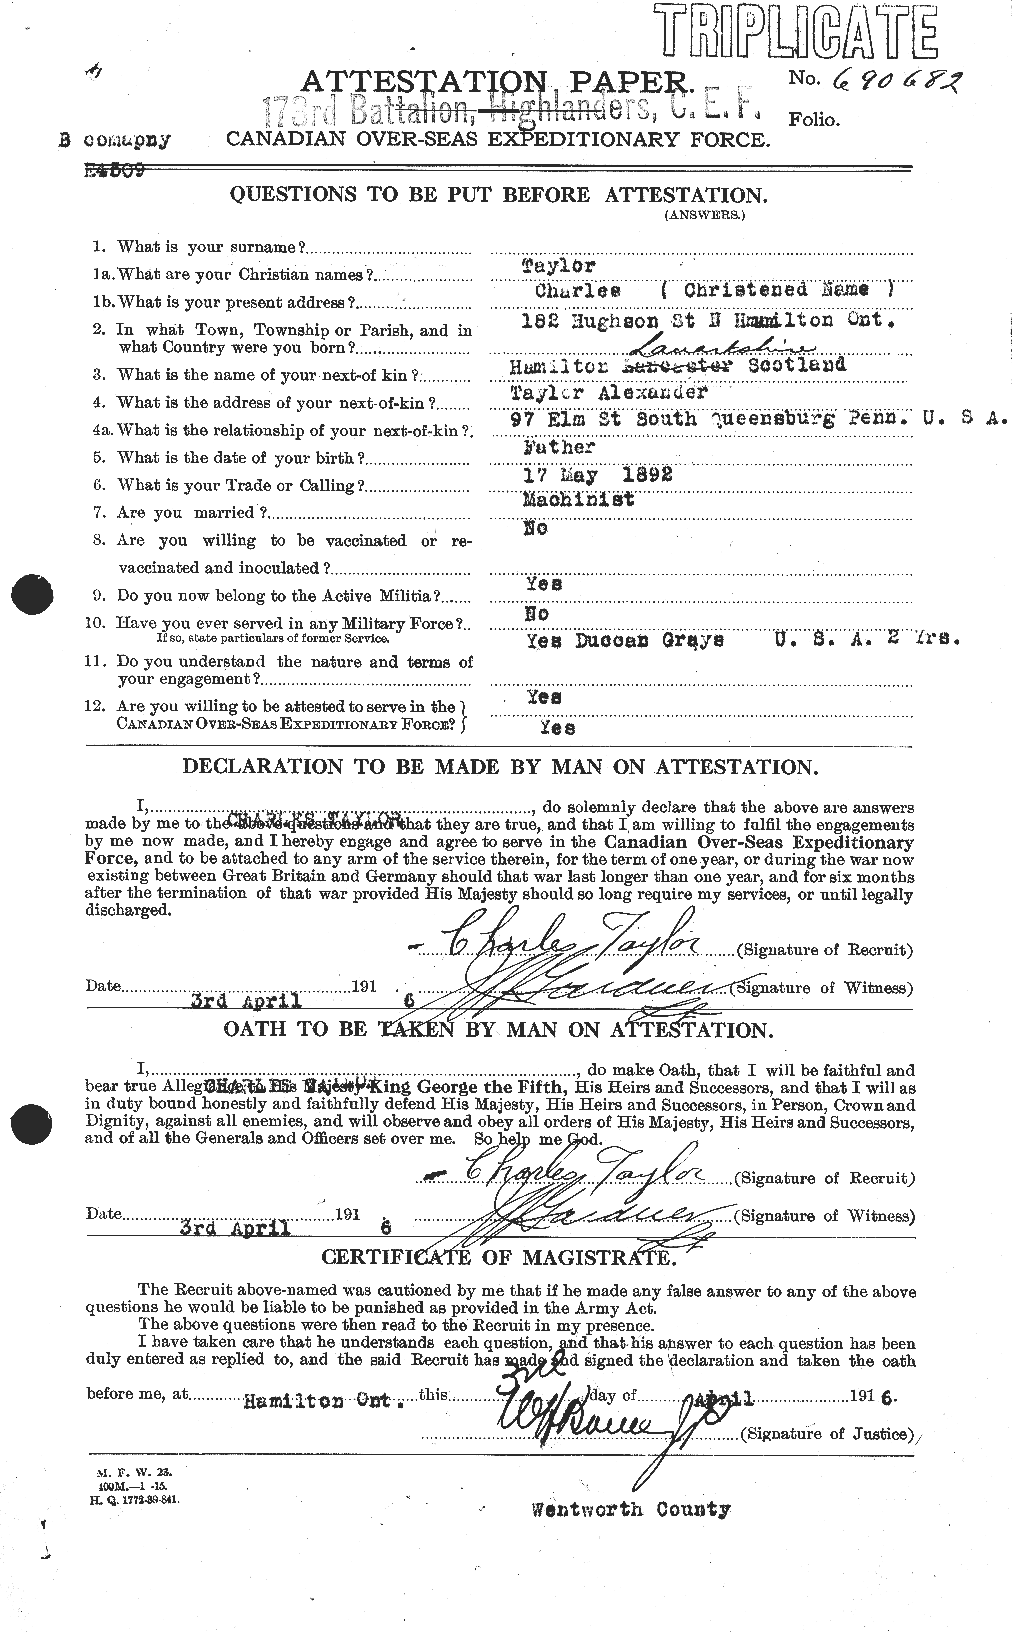 Dossiers du Personnel de la Première Guerre mondiale - CEC 626807a